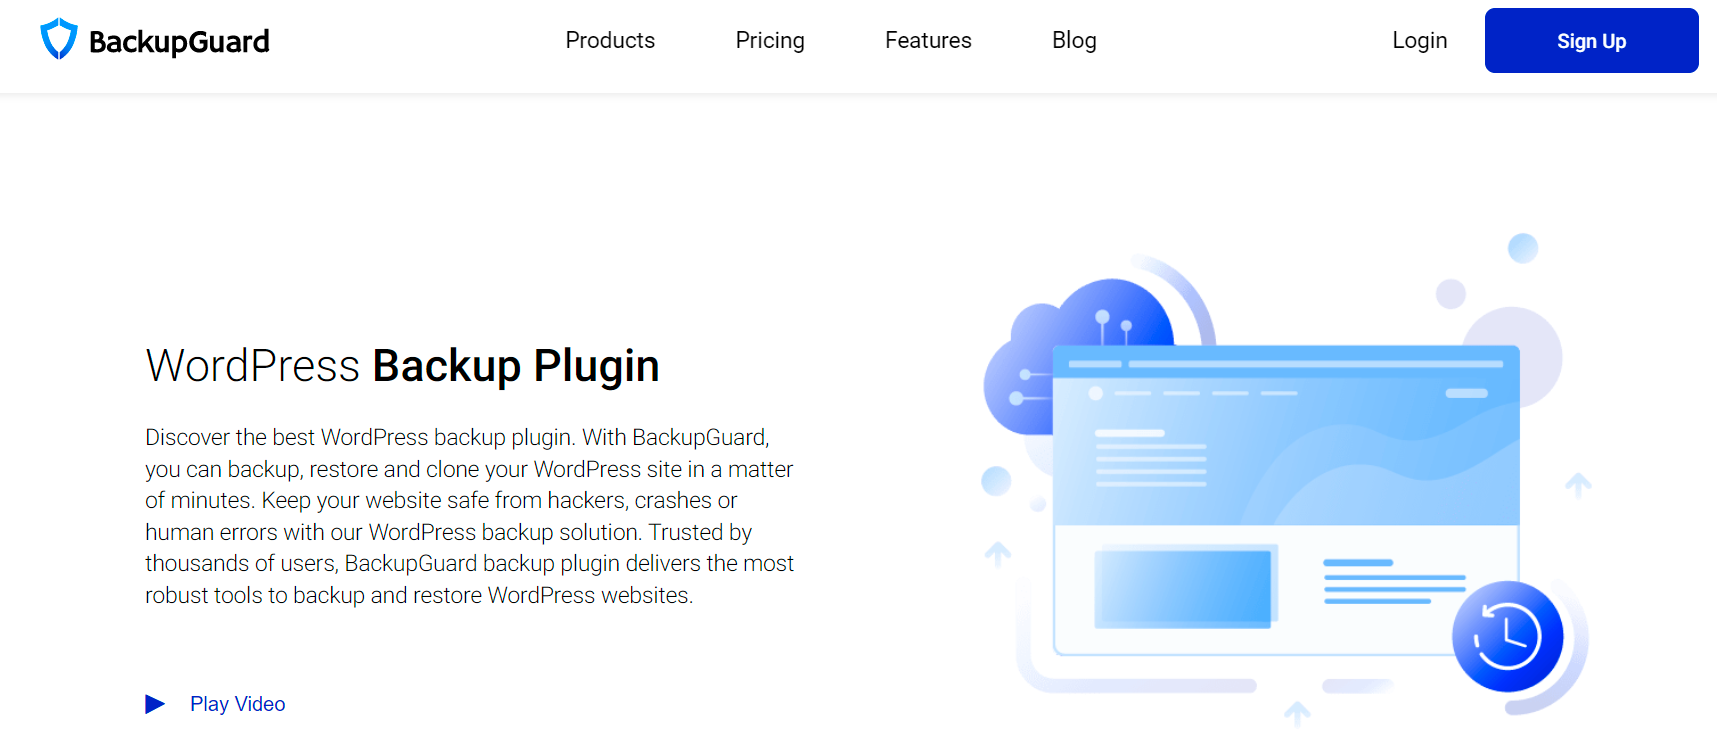 BackupGuard Pro 1.6.8.4 – WordPress Backup Plugin